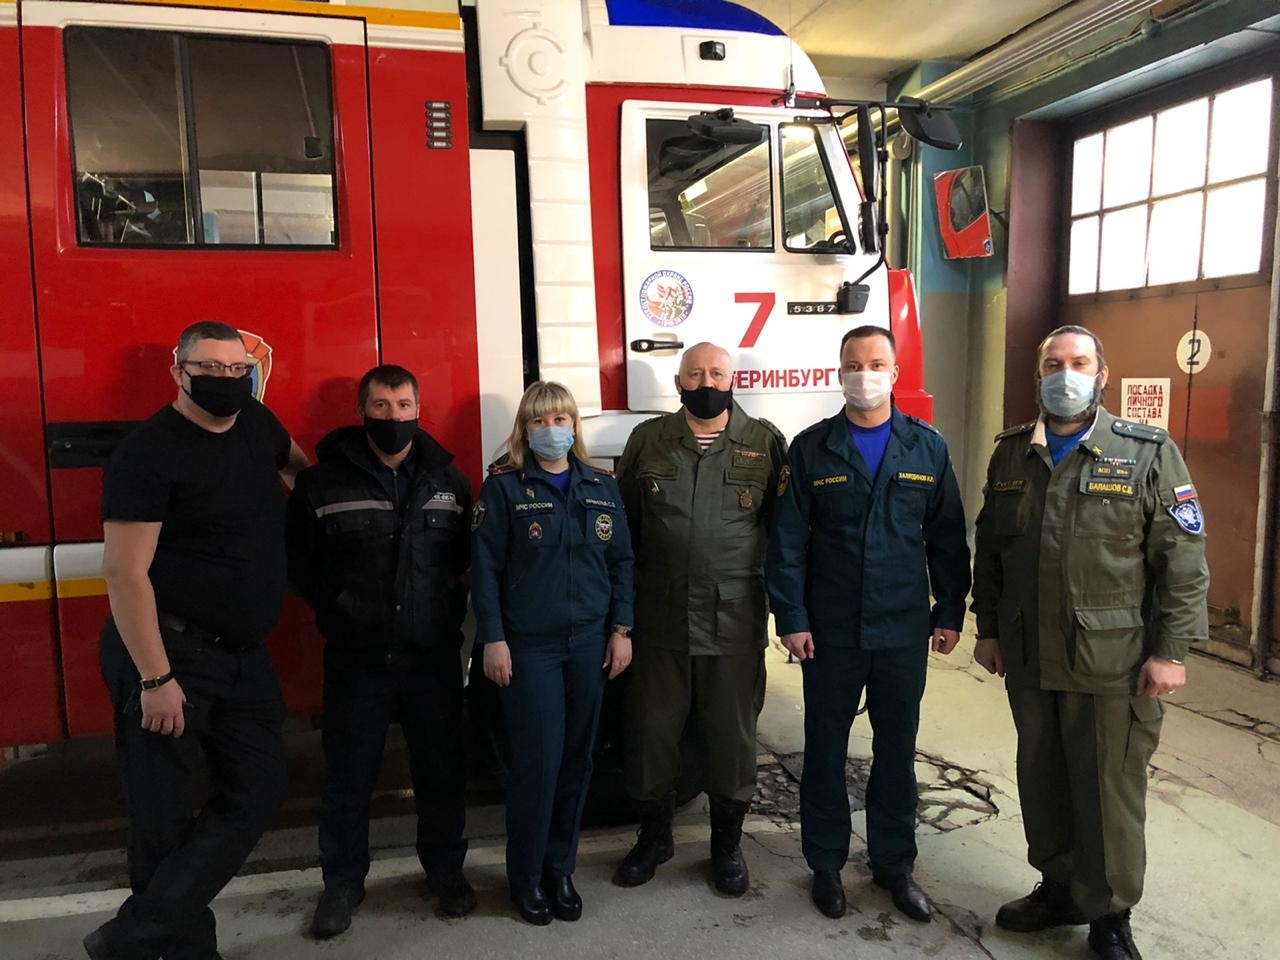 Казачий хутор «Екатерининский» посетил 7 пожарно-спасательную часть